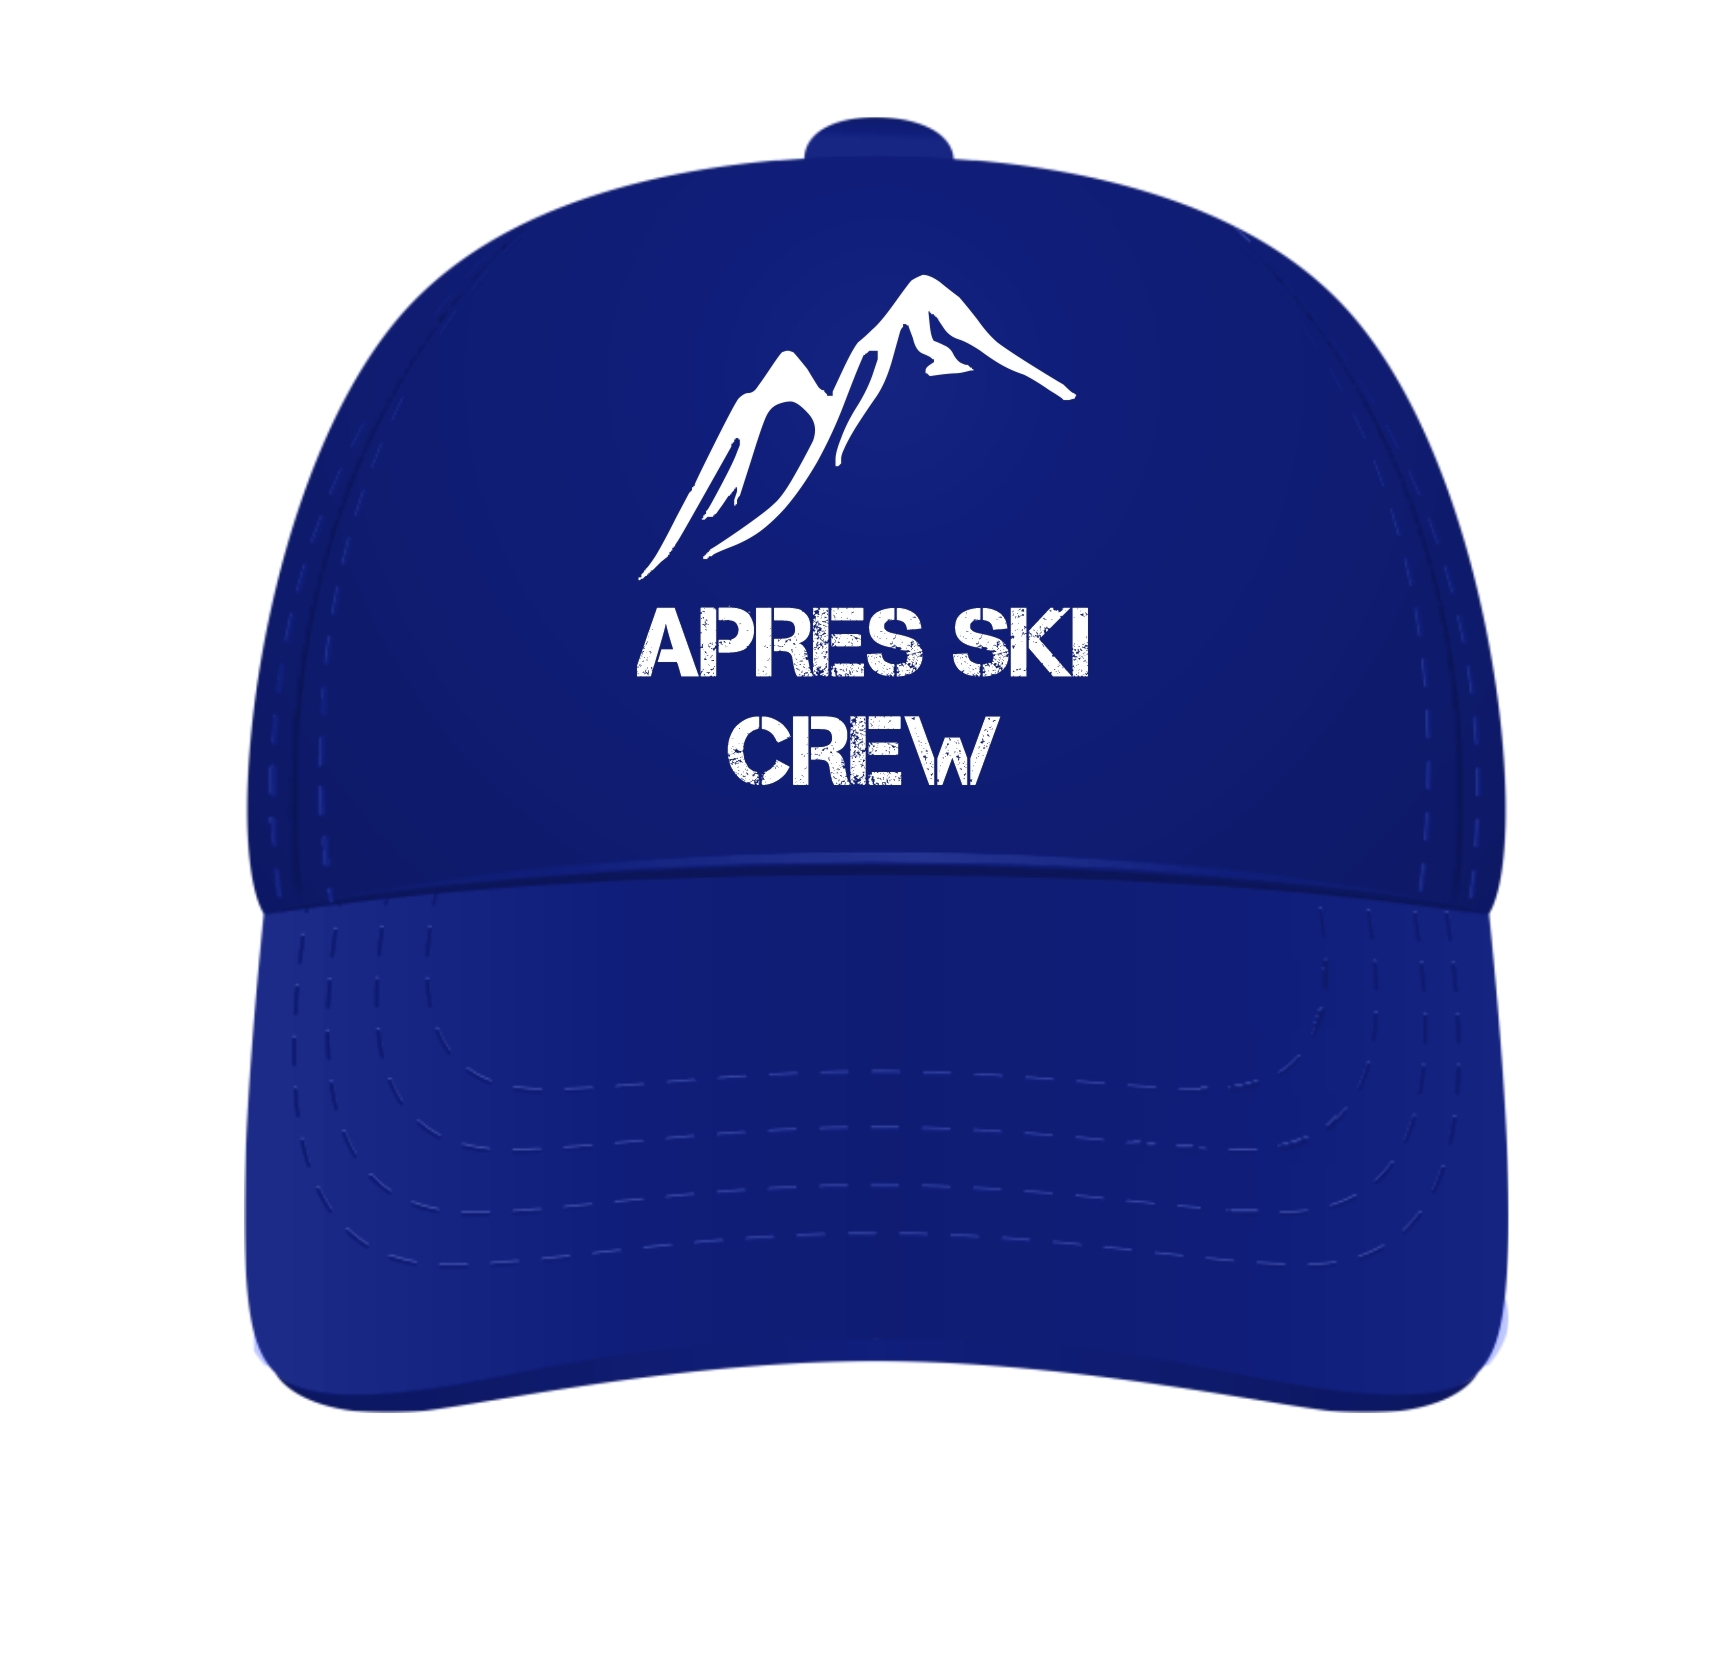 Apres ski crew cap leuk voor een apres ski party verstelbare pet